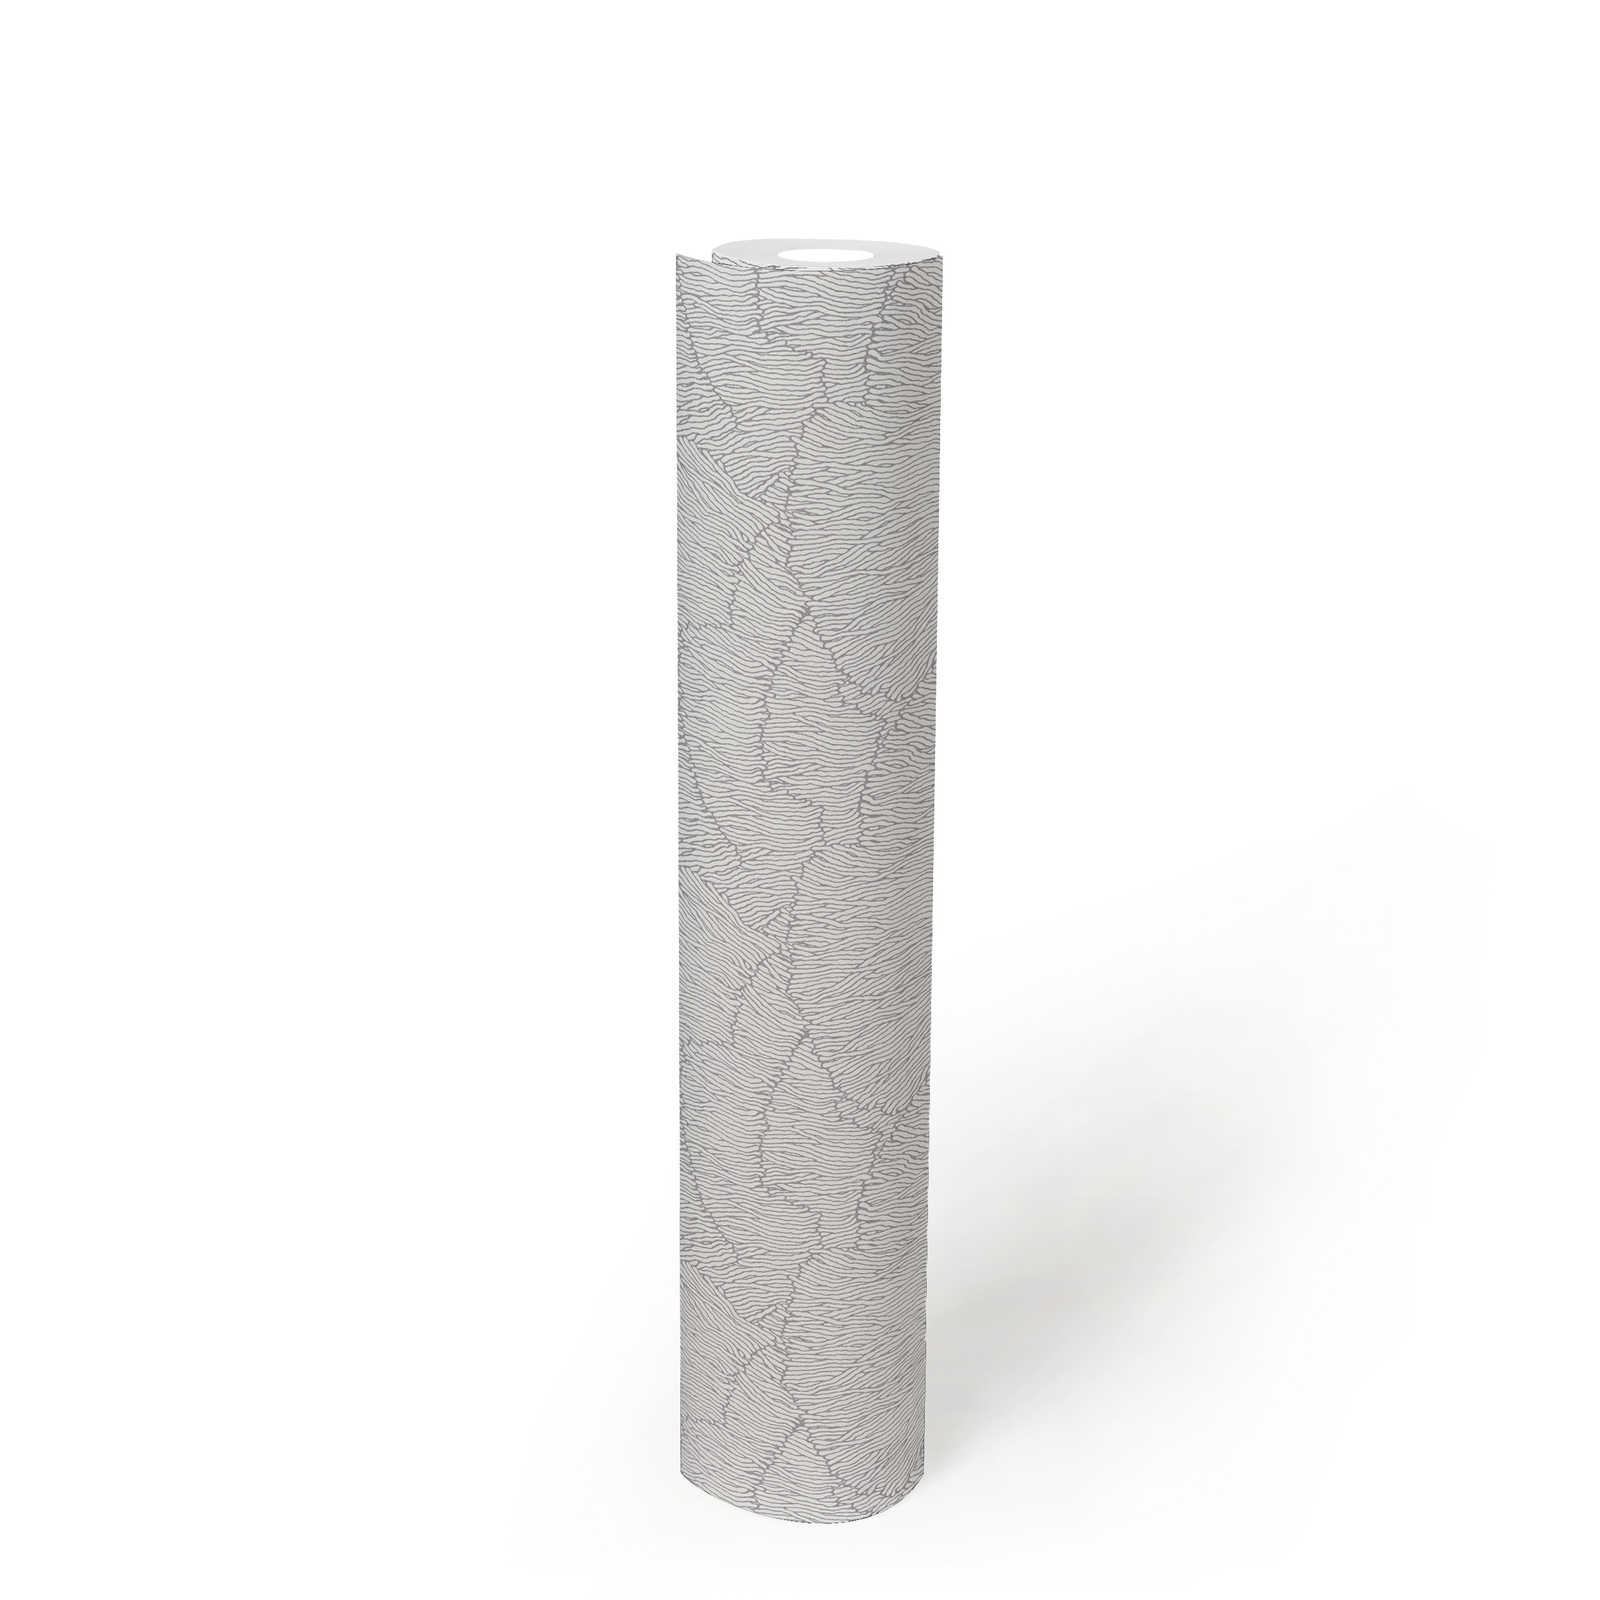             Vliestapete mit abstrakten Muster – Silber, Weiß, Metallic
        